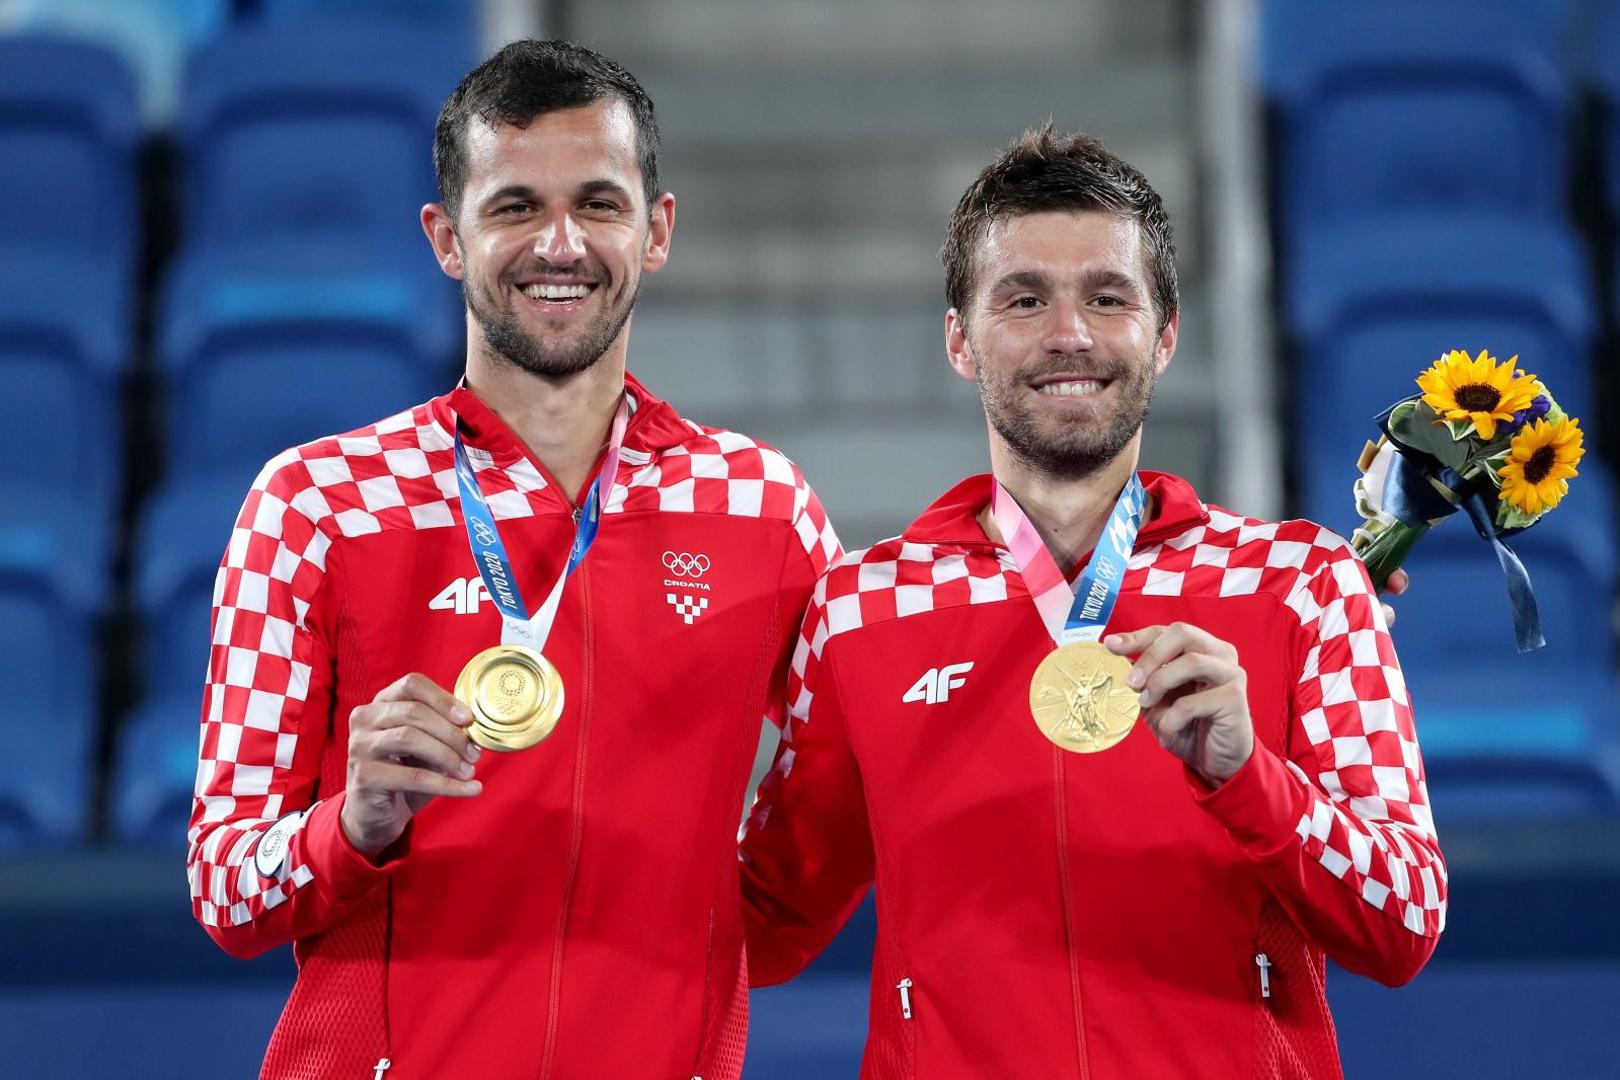 Zlatnu medalju osvojili su Nikola Mektić i Mate Pavić, srebro je pripalo Marinu Čiliću i Ivanu Dodigu, a bronca Marcusu Daniellu i Michaelu Venusu iz Novog Zealanda.

